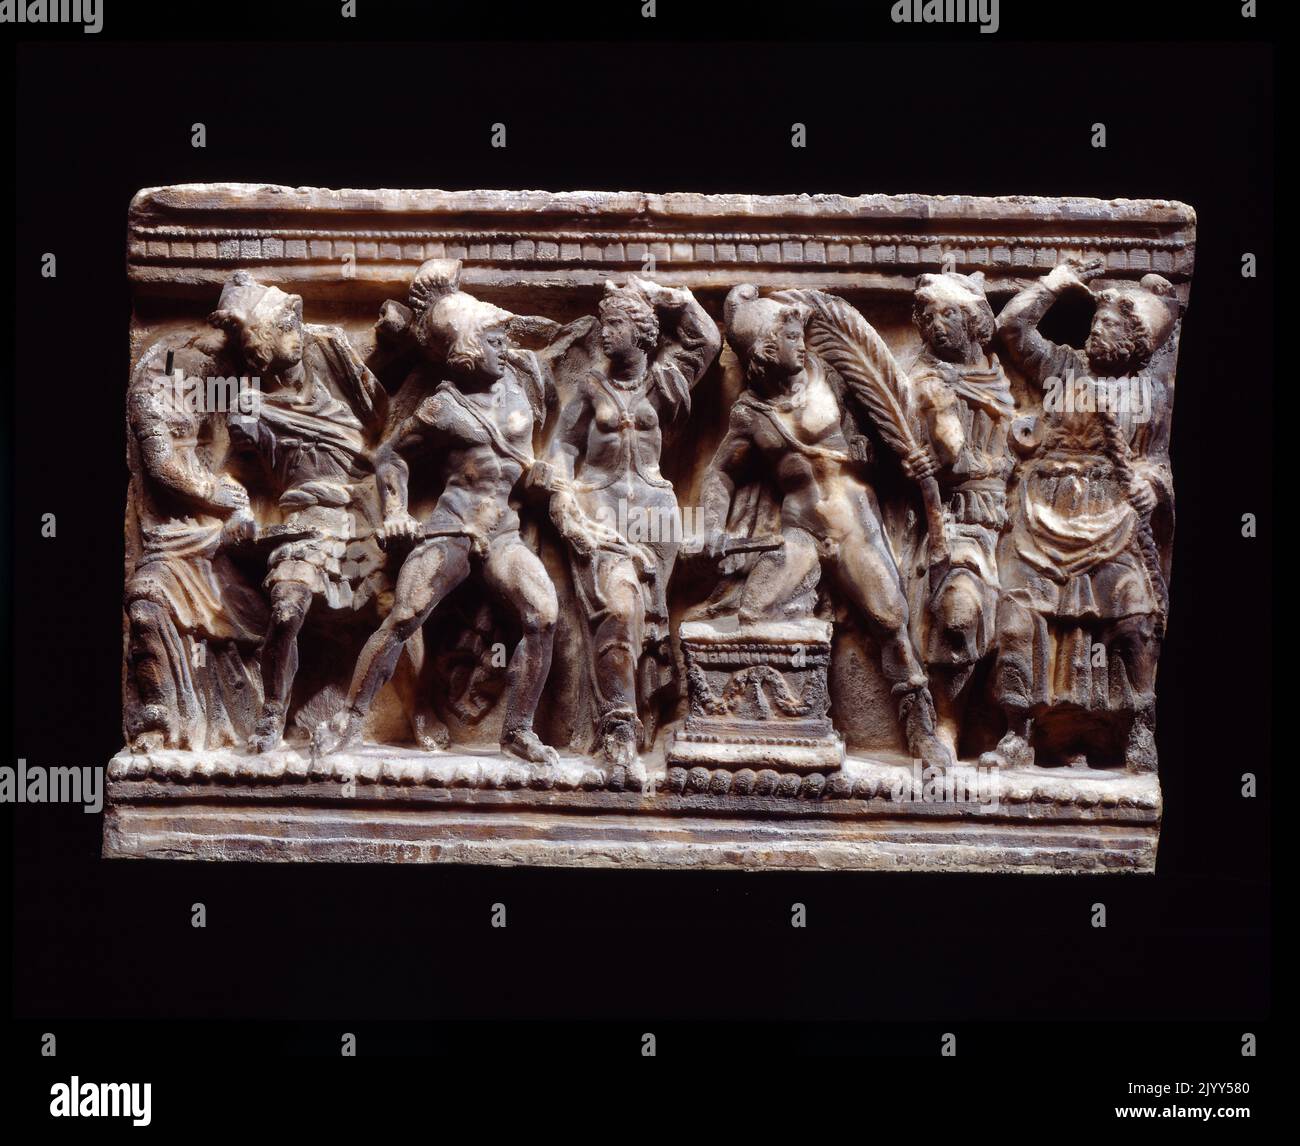 Soldaten auf der Alabasterurne von Volterra, einem etruskischen Kunstwerk aus dem 2.. Jahrhundert v. Chr. dargestellt. Volterra ist eine ummauerte Bergstadt in der Toskana, deren Geschichte vor dem 7.. Jahrhundert v. Chr. datiert Stockfoto